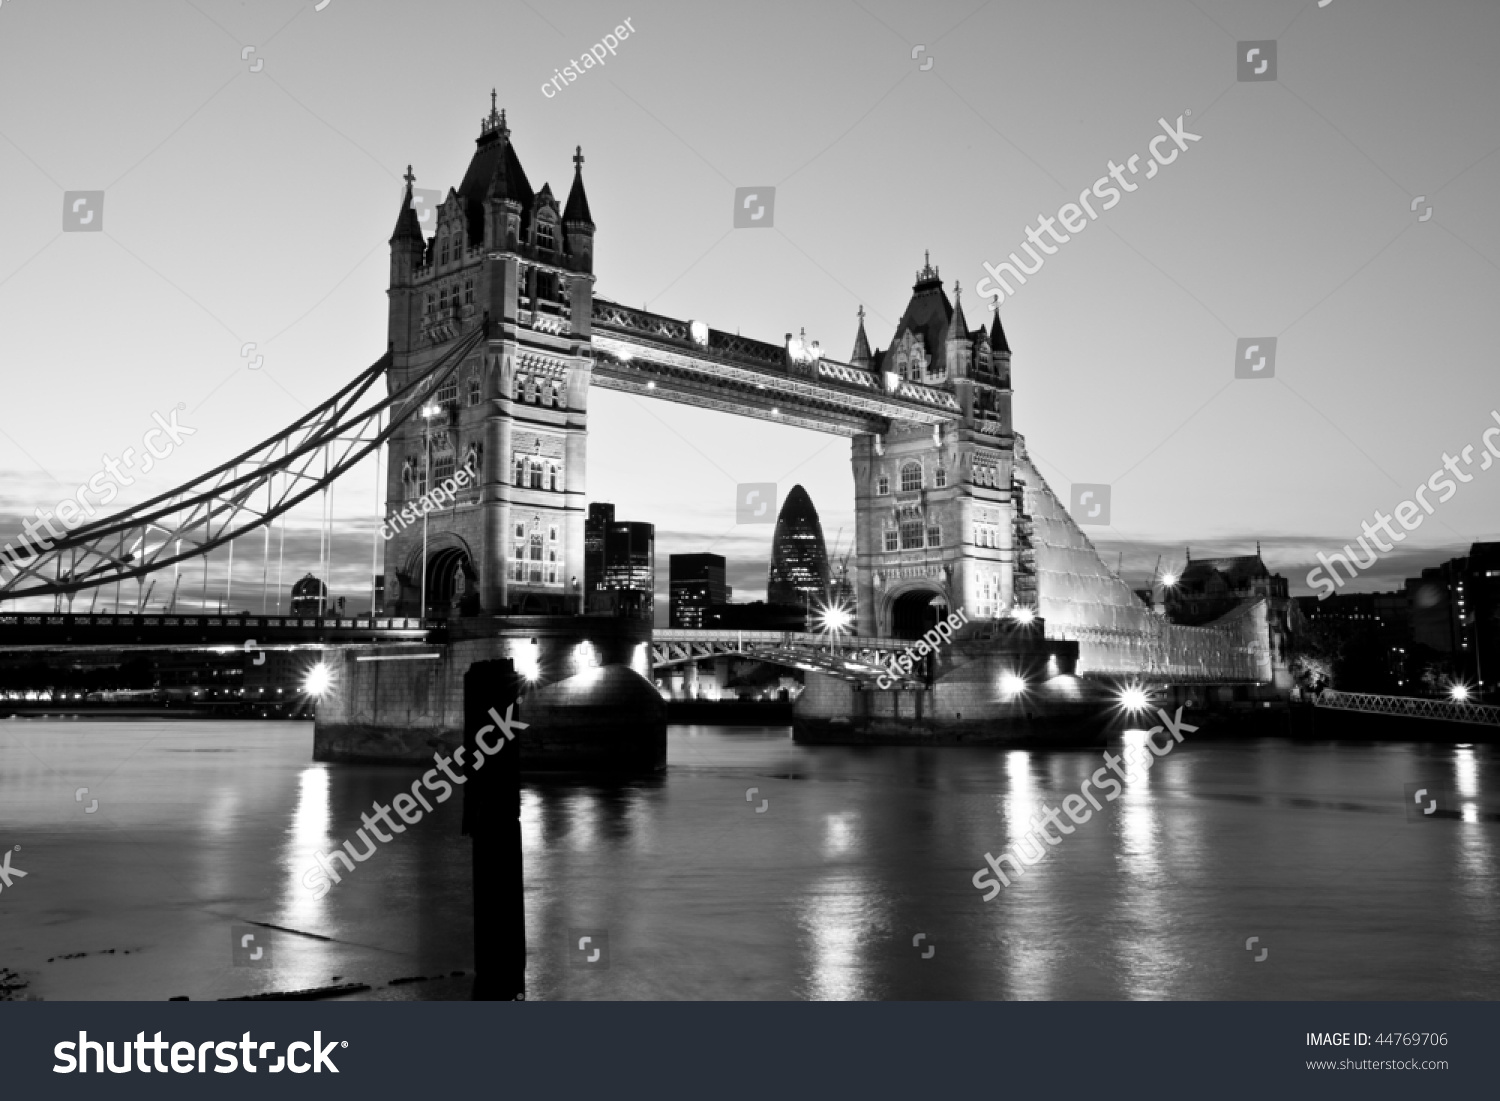 Tower Bridge Stock Photo 44769706 | Shutterstock